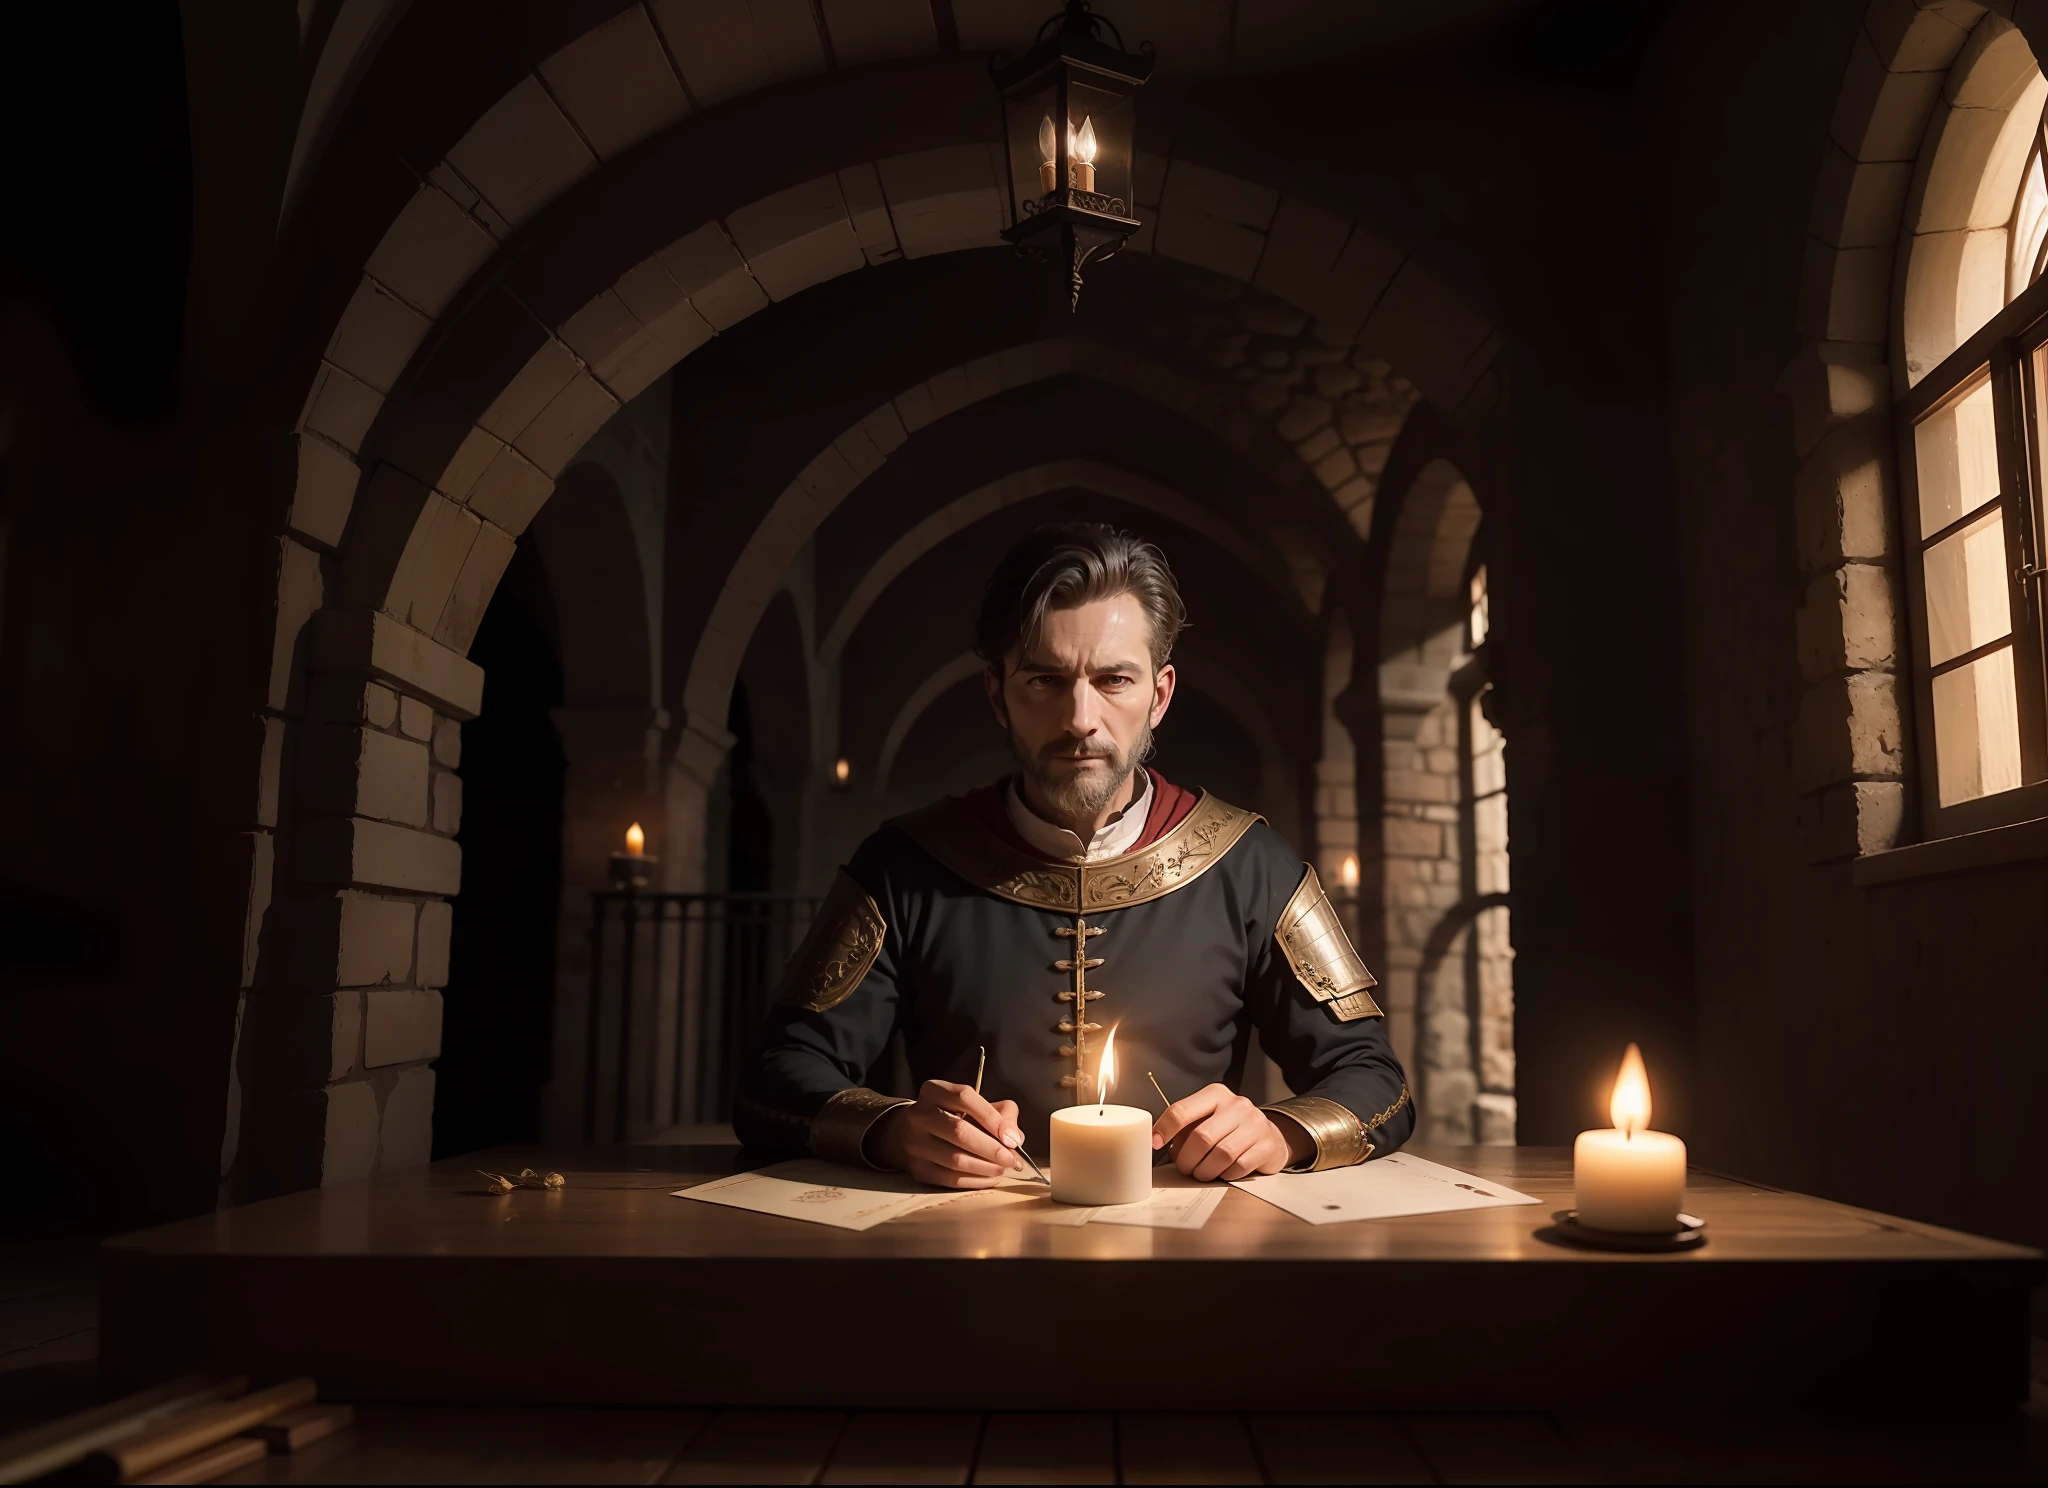 Hombre con cara triste y oprimida., escribiendo una carta, interior de casa medieval, casa medieval. Iluminado a luz de velas, Fantasía oscura, máximo detallado, Surrealism, alta calidad, 8K, Súper detalle